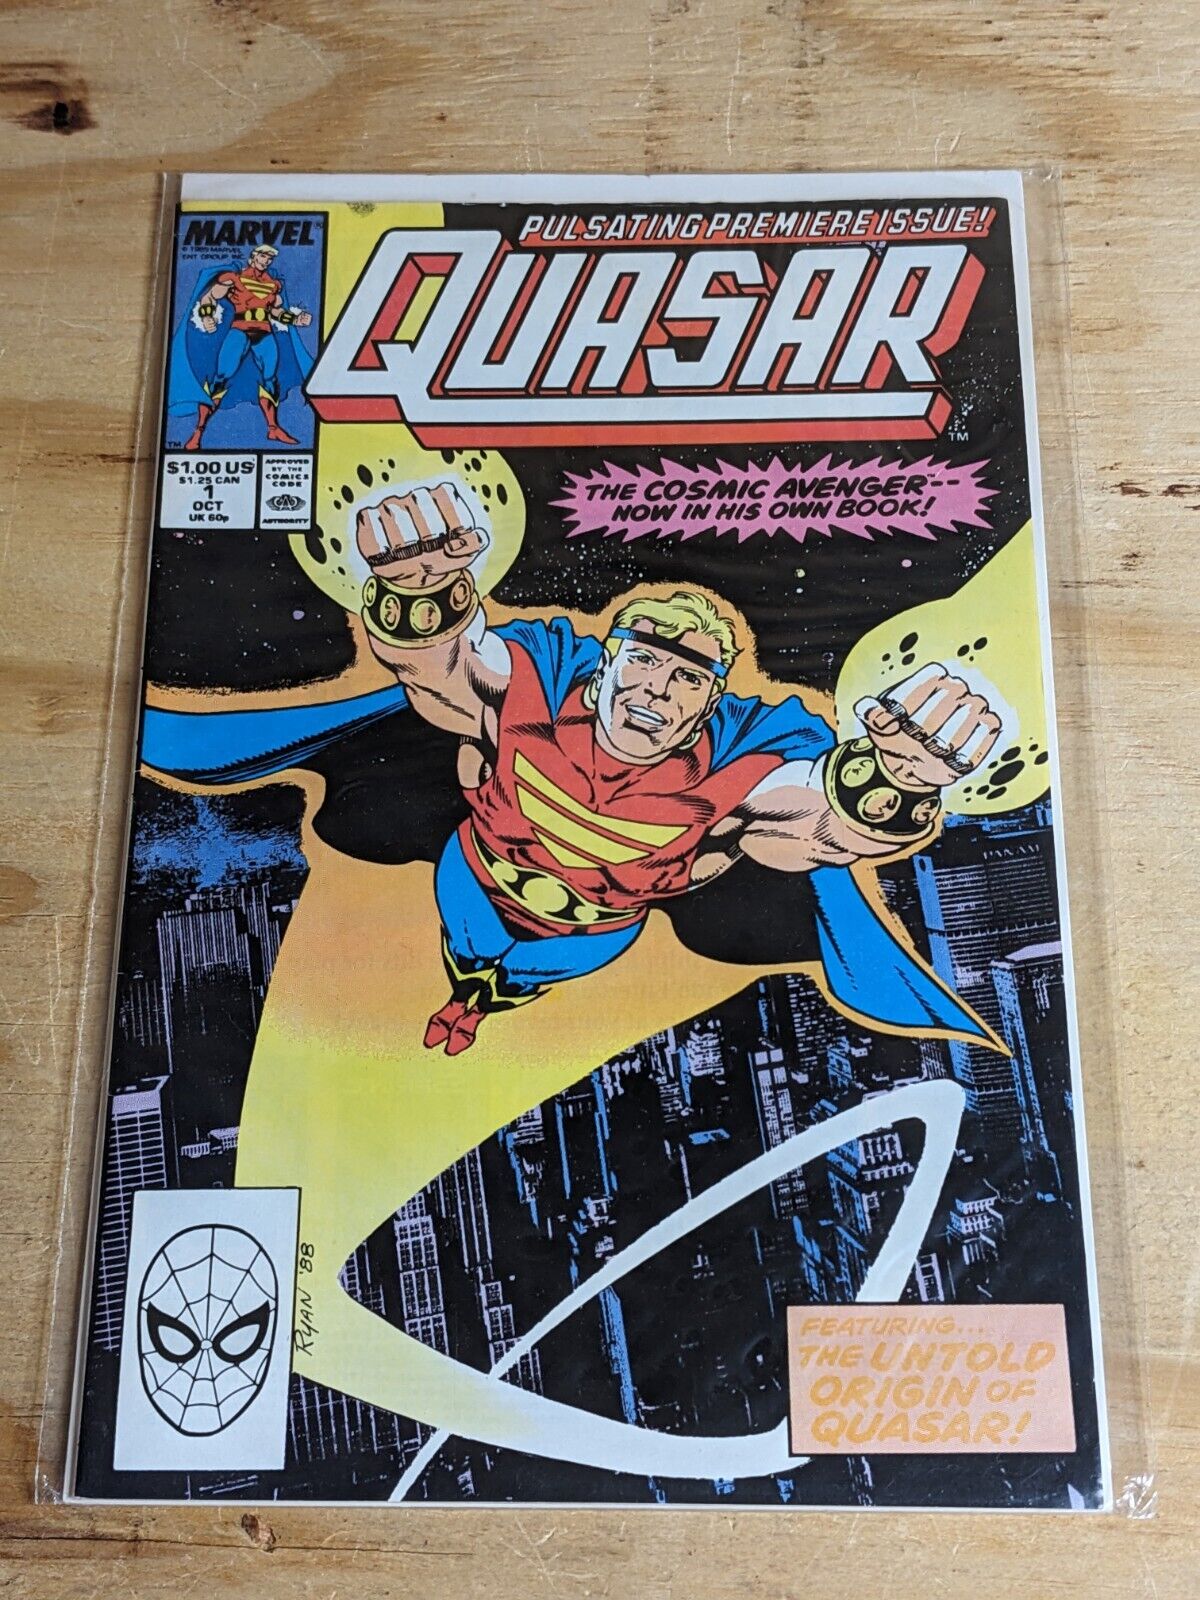 Quasar #1 Oct 1989, Marvel Premiere Issue The Price Of Power + Origin Of Quasar